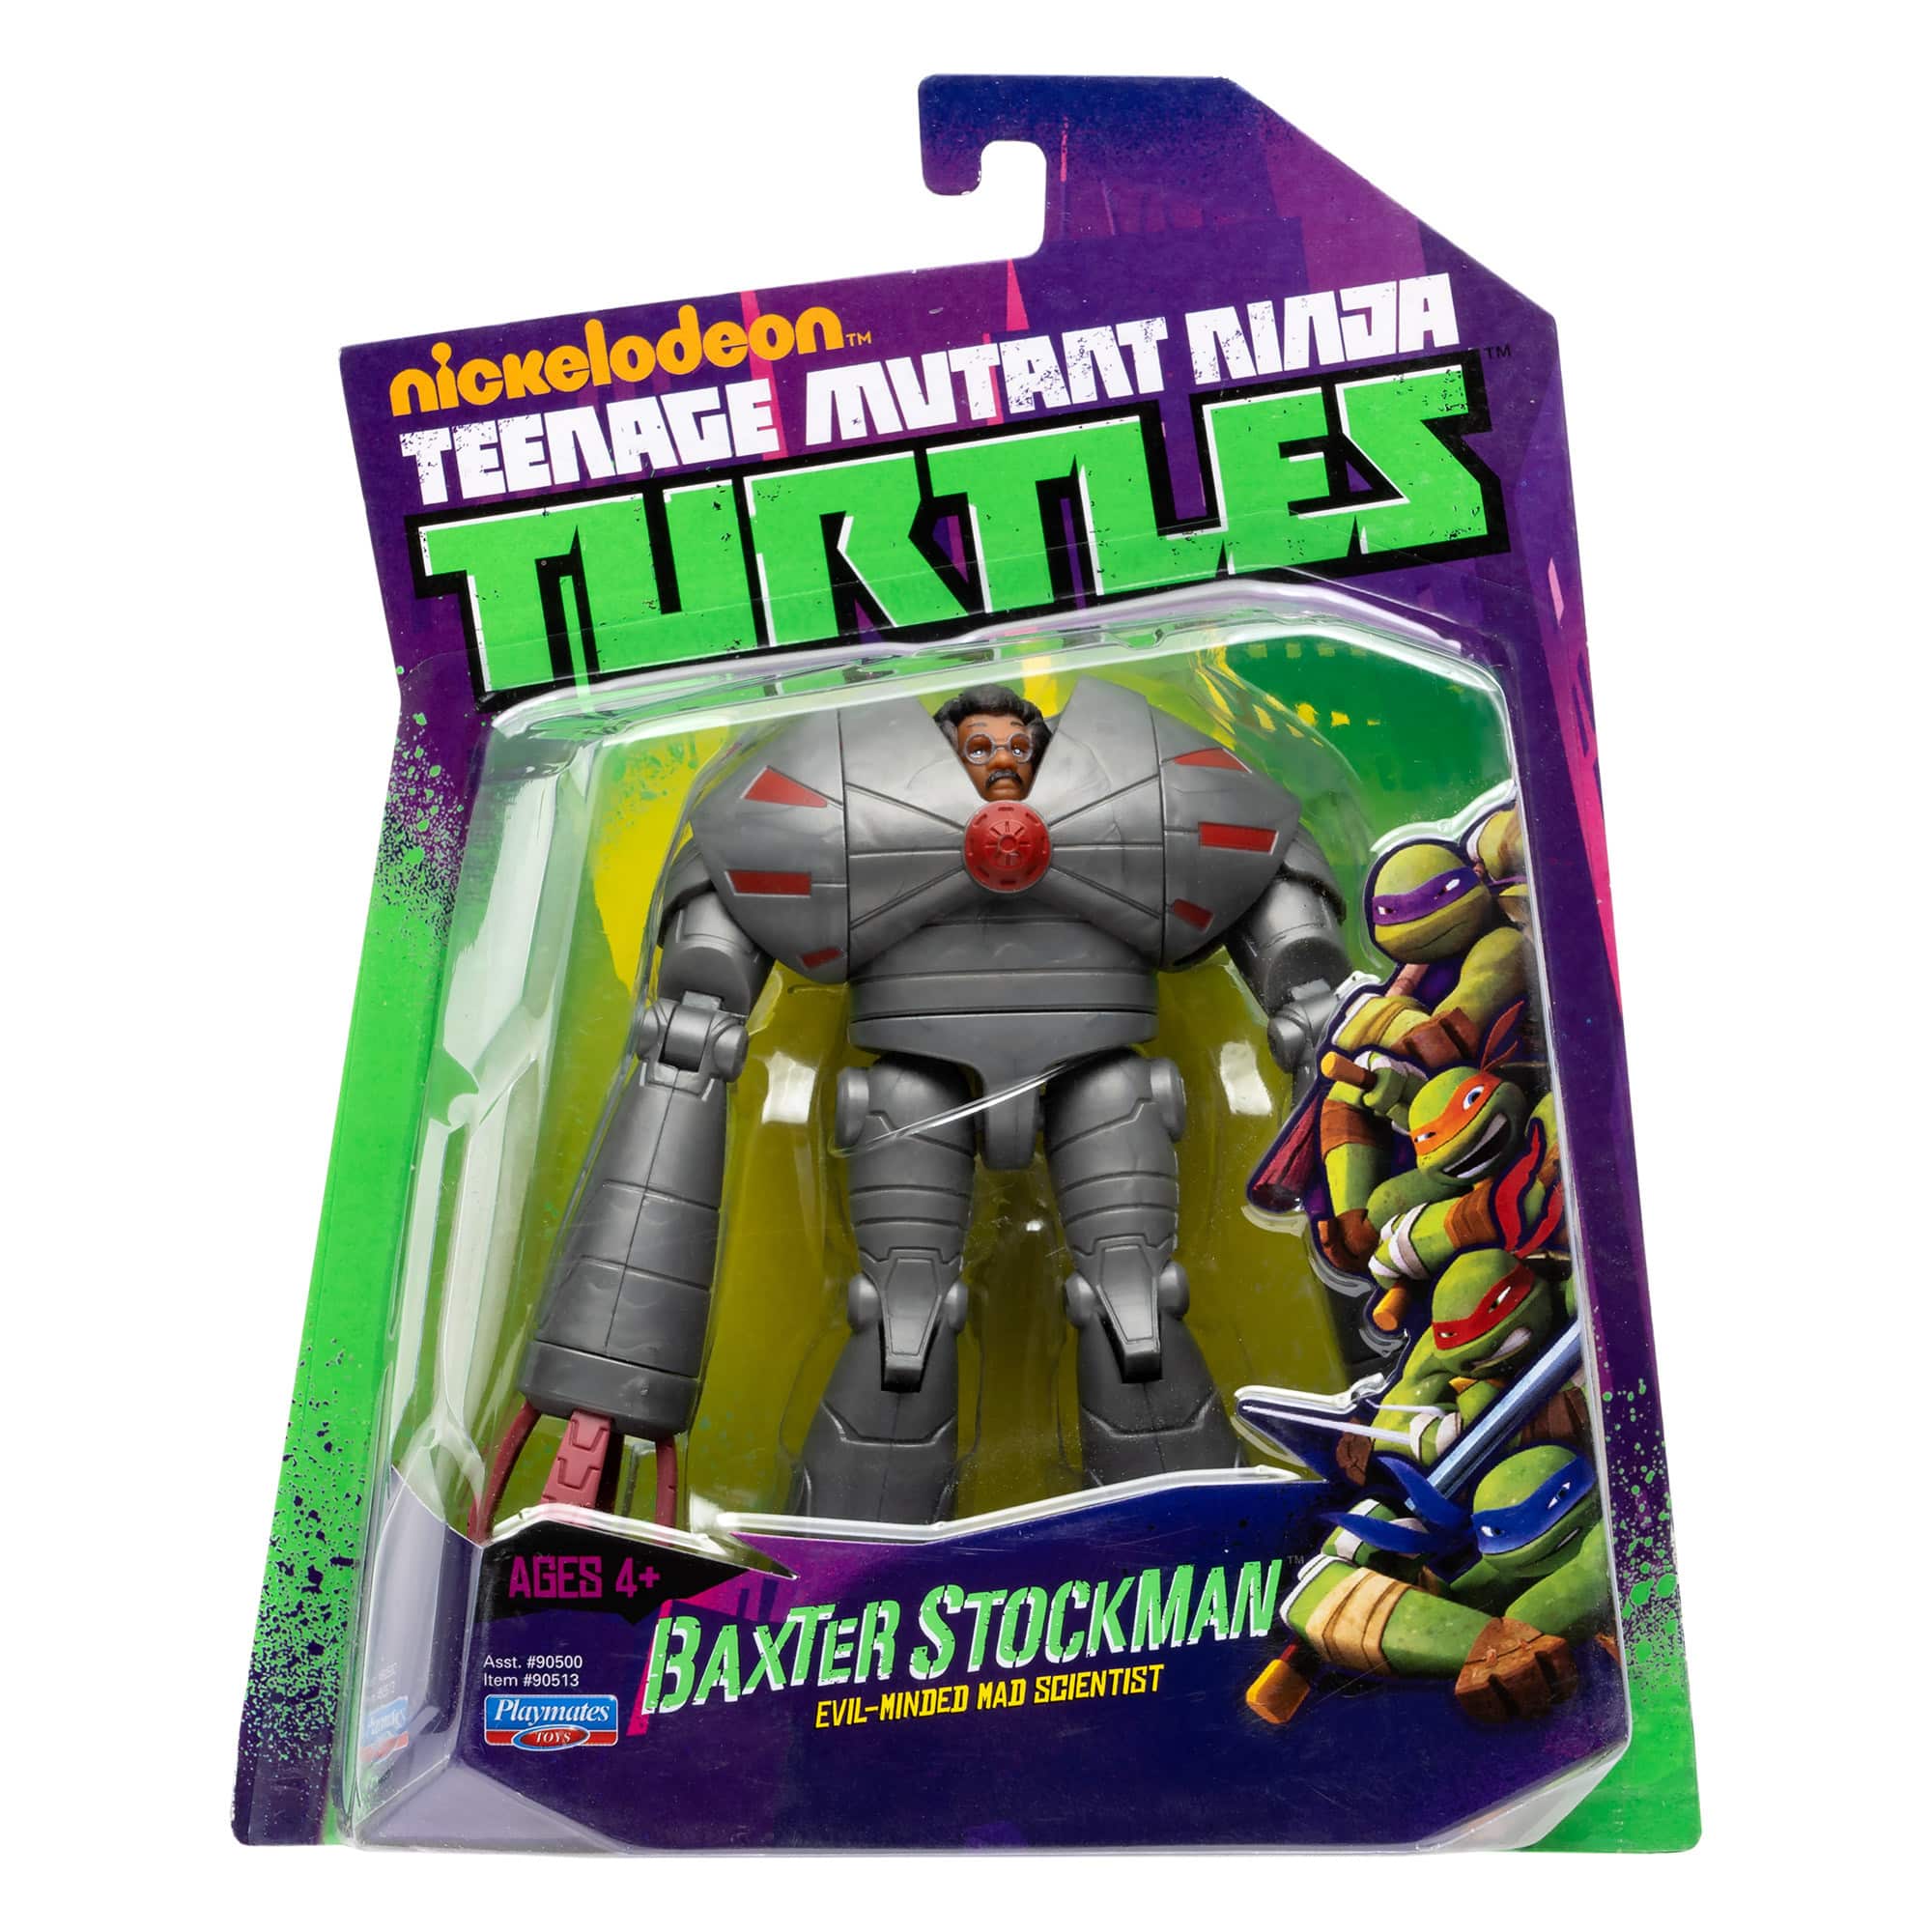 Teenage Mutant Ninja Turtles - Baxter Stockman Figure